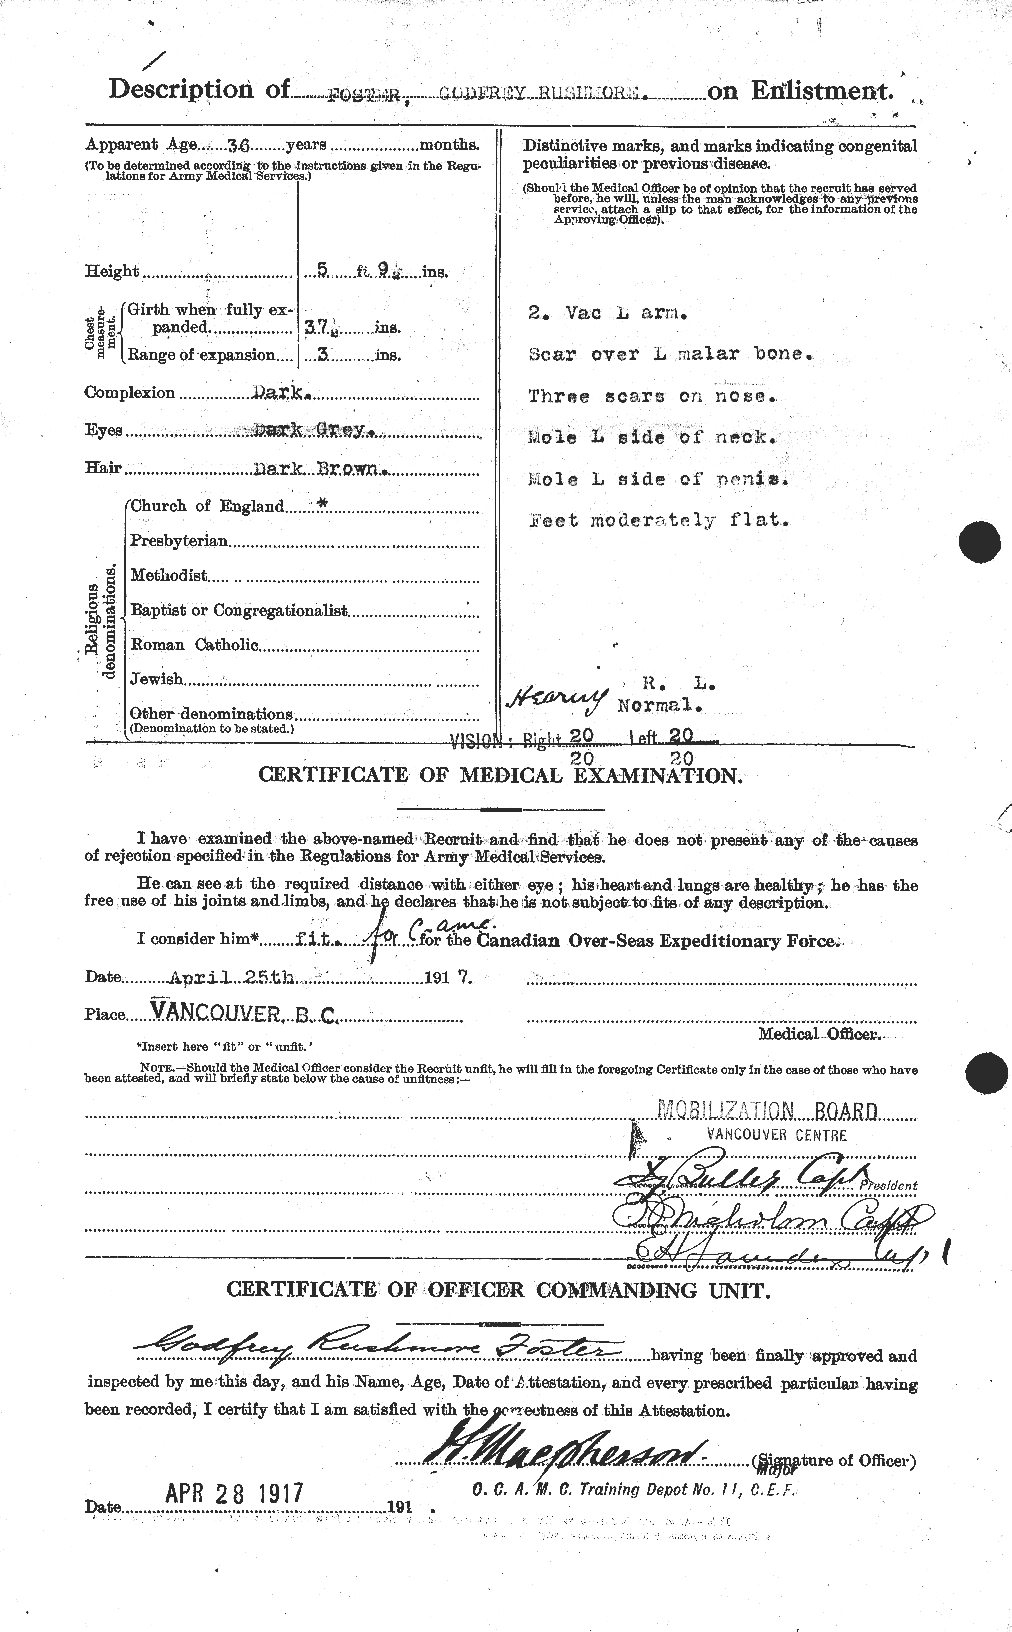 Dossiers du Personnel de la Première Guerre mondiale - CEC 330716b